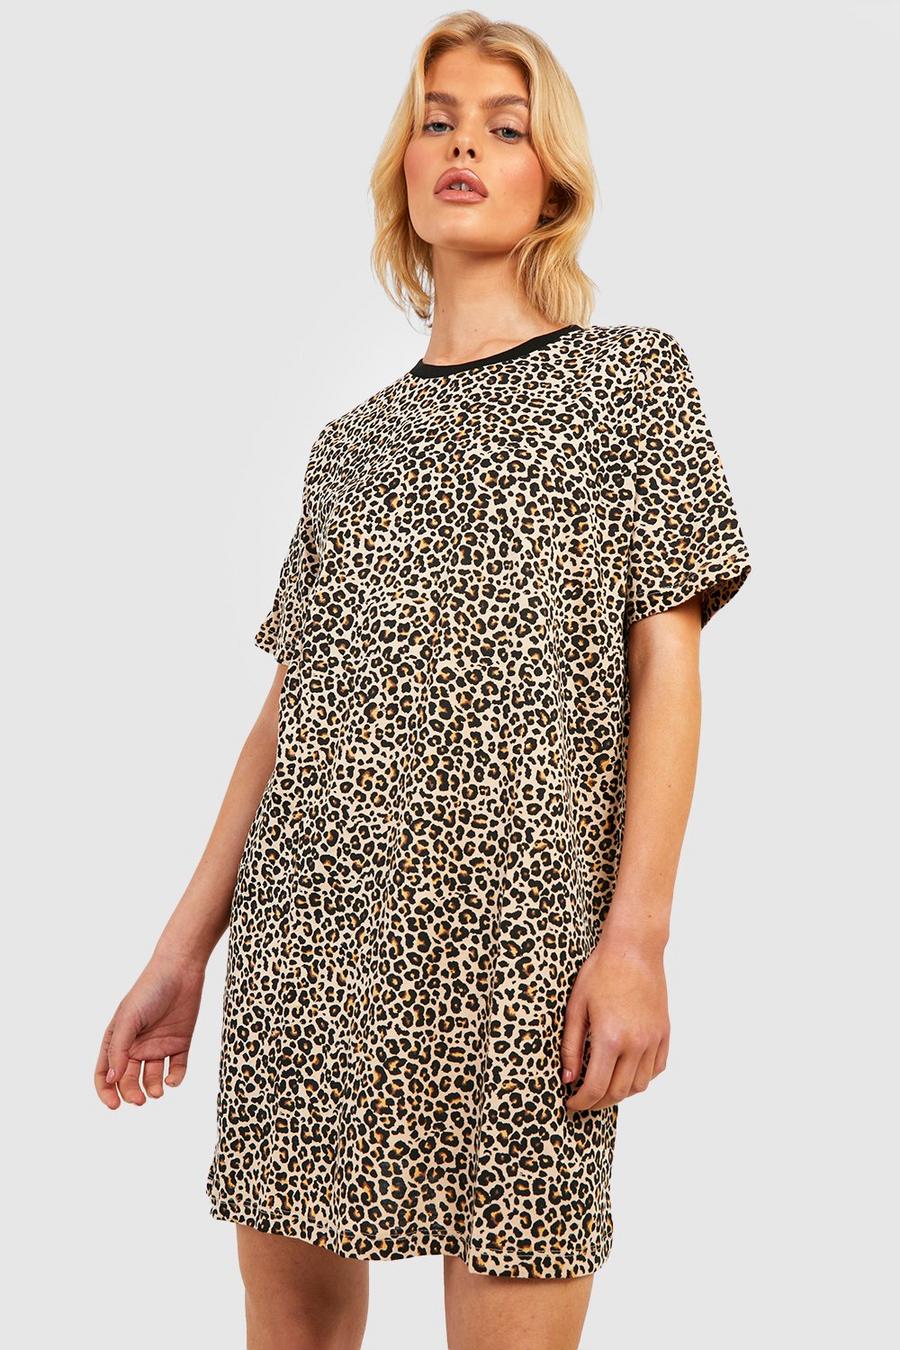 Brown Leopard T-shirt Dress